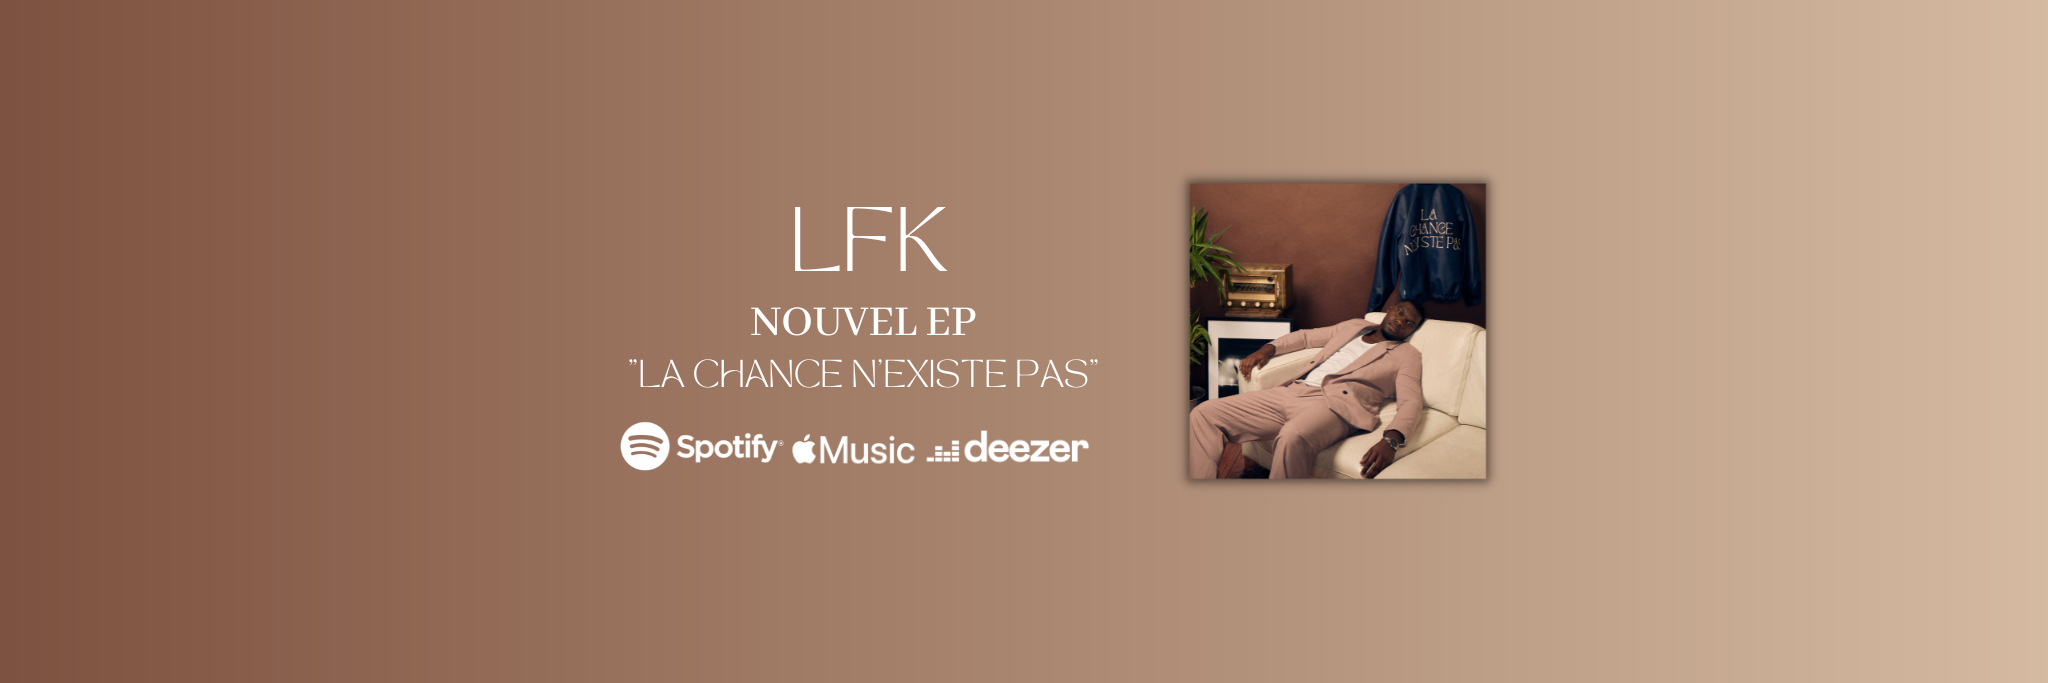 LFK, groupe de musique Chanteur en représentation à Loiret - photo de couverture